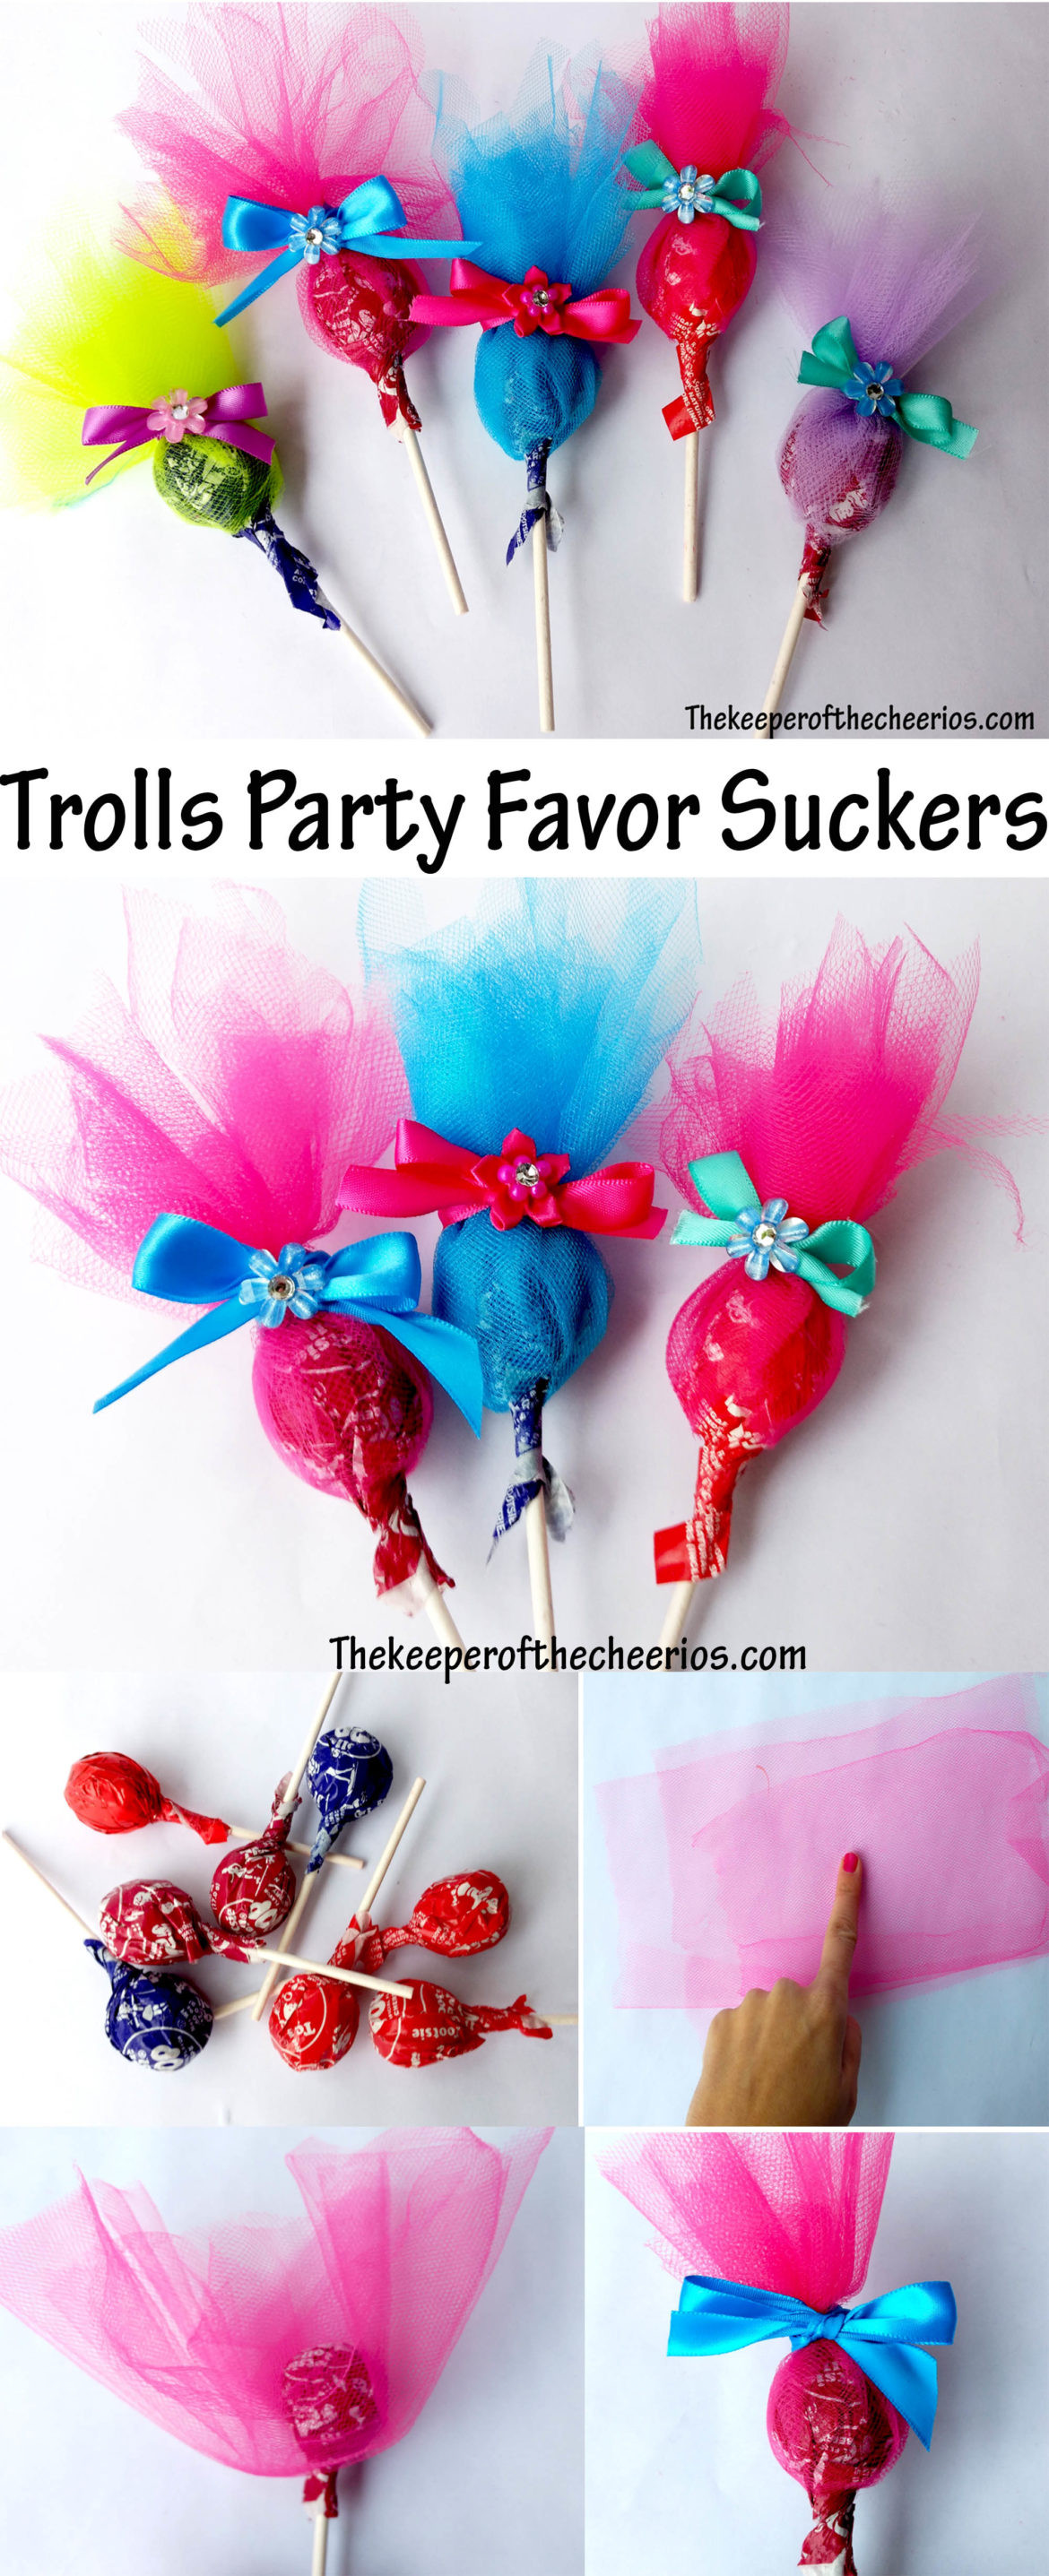 Trolls Party Favor Ideas
 Trolls Party Favor Suckers